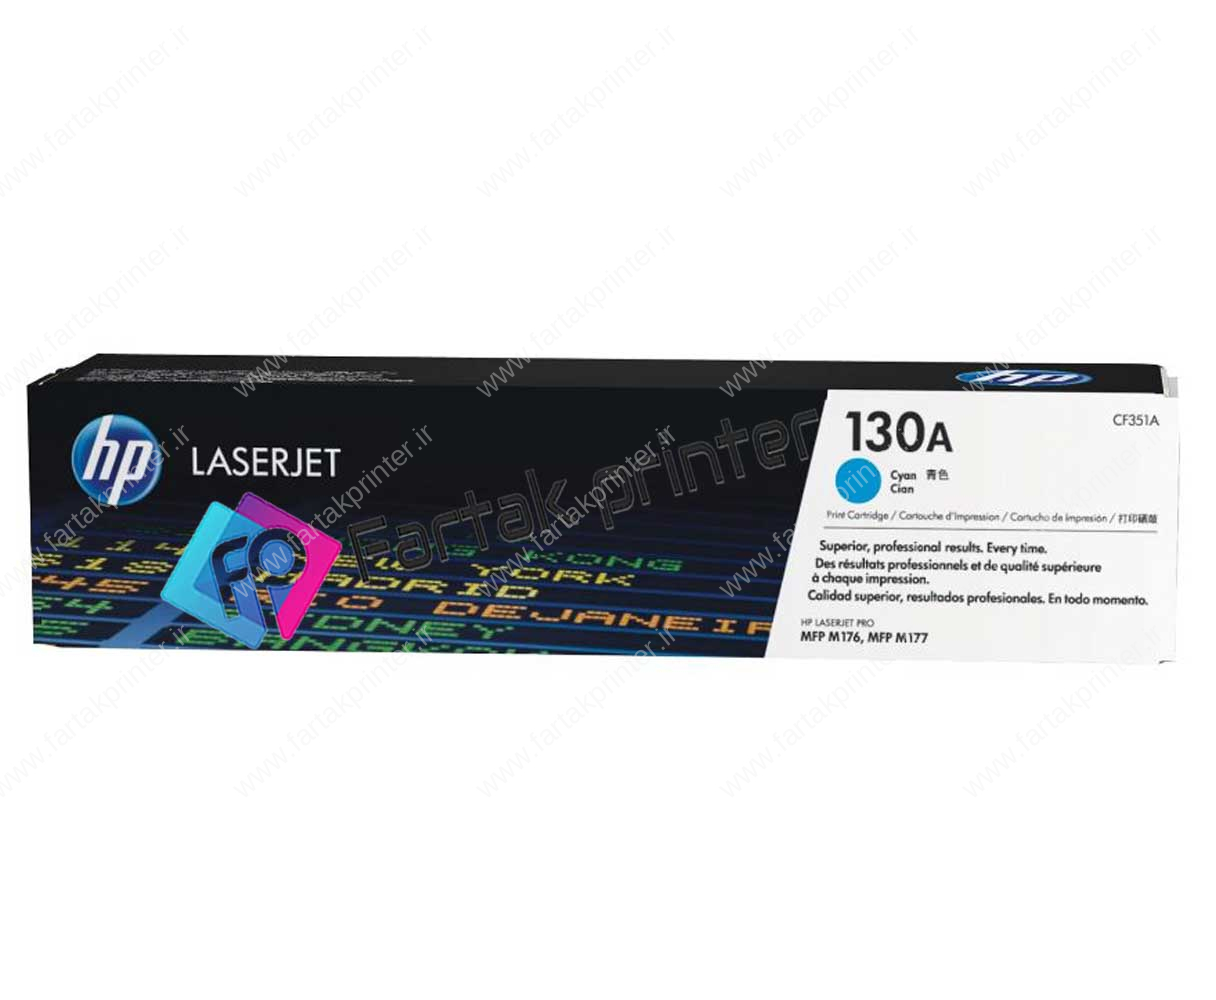 کارتریج پرینتر رنگی اچ پی HP Color LaserJet Pro MFP M177fw, M176n, 130a